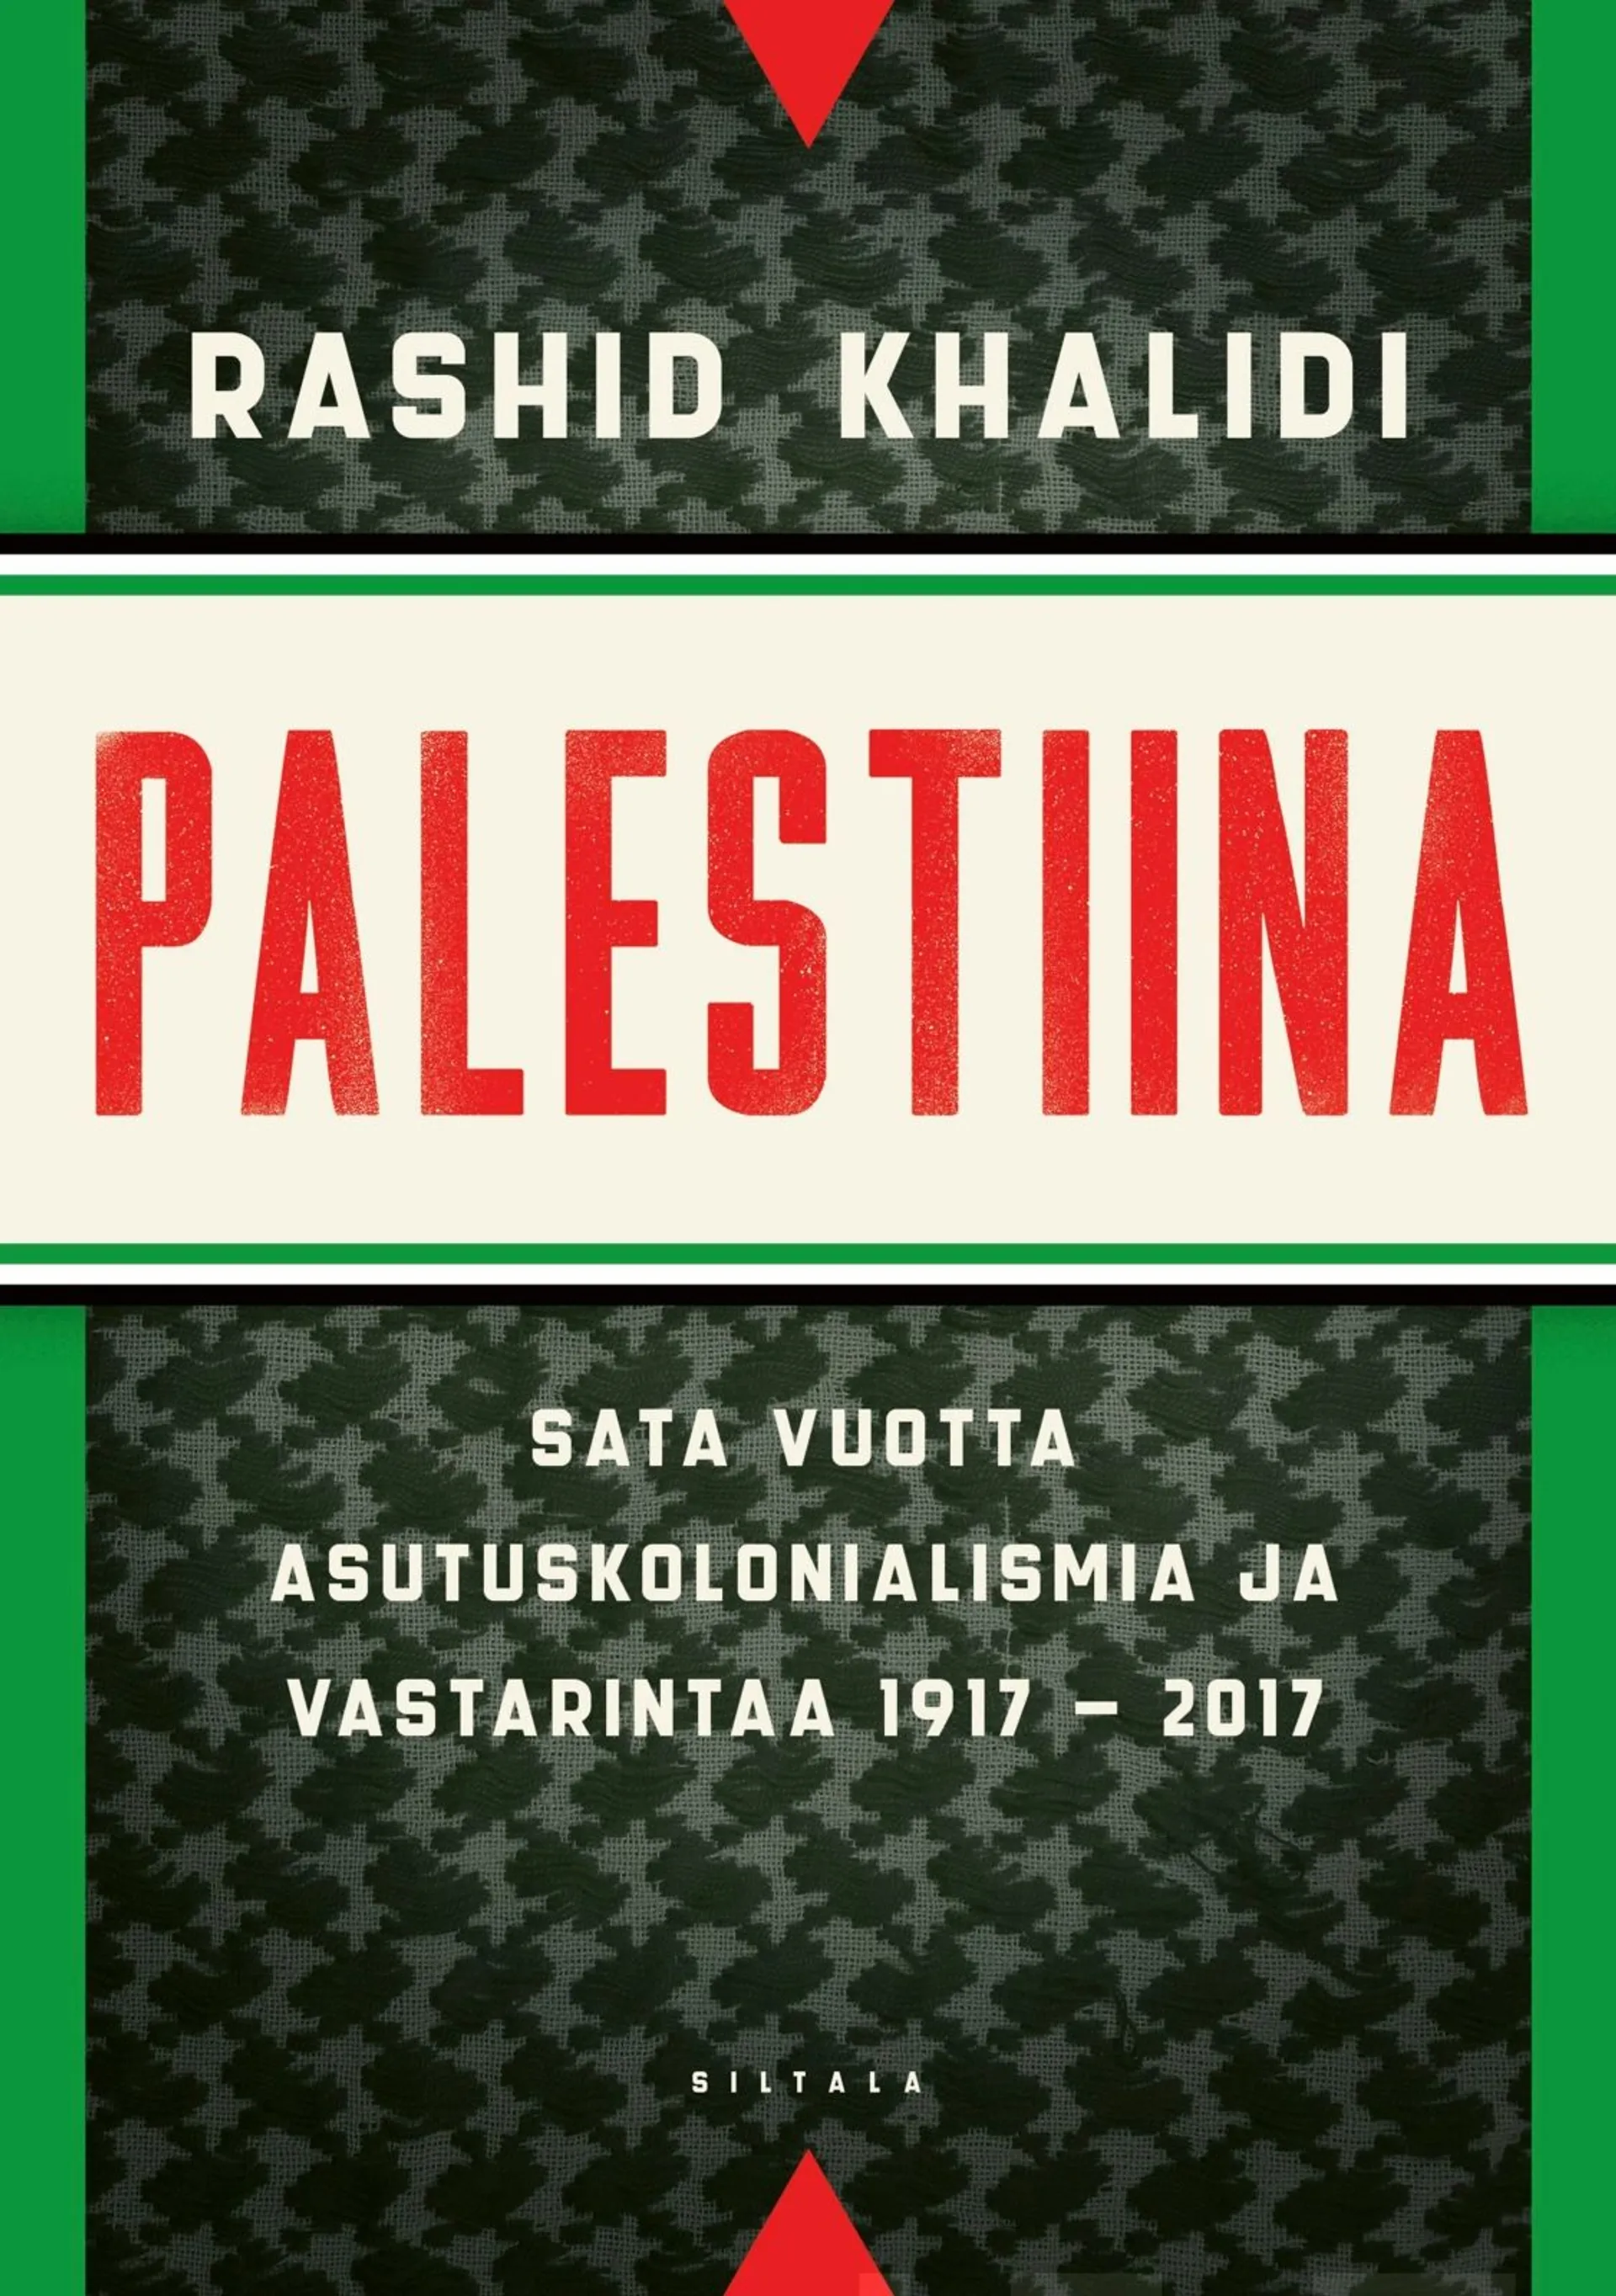 Khalidi, Palestiina - Sata vuotta asutuskolonialismia ja vastarintaa 1917-2017